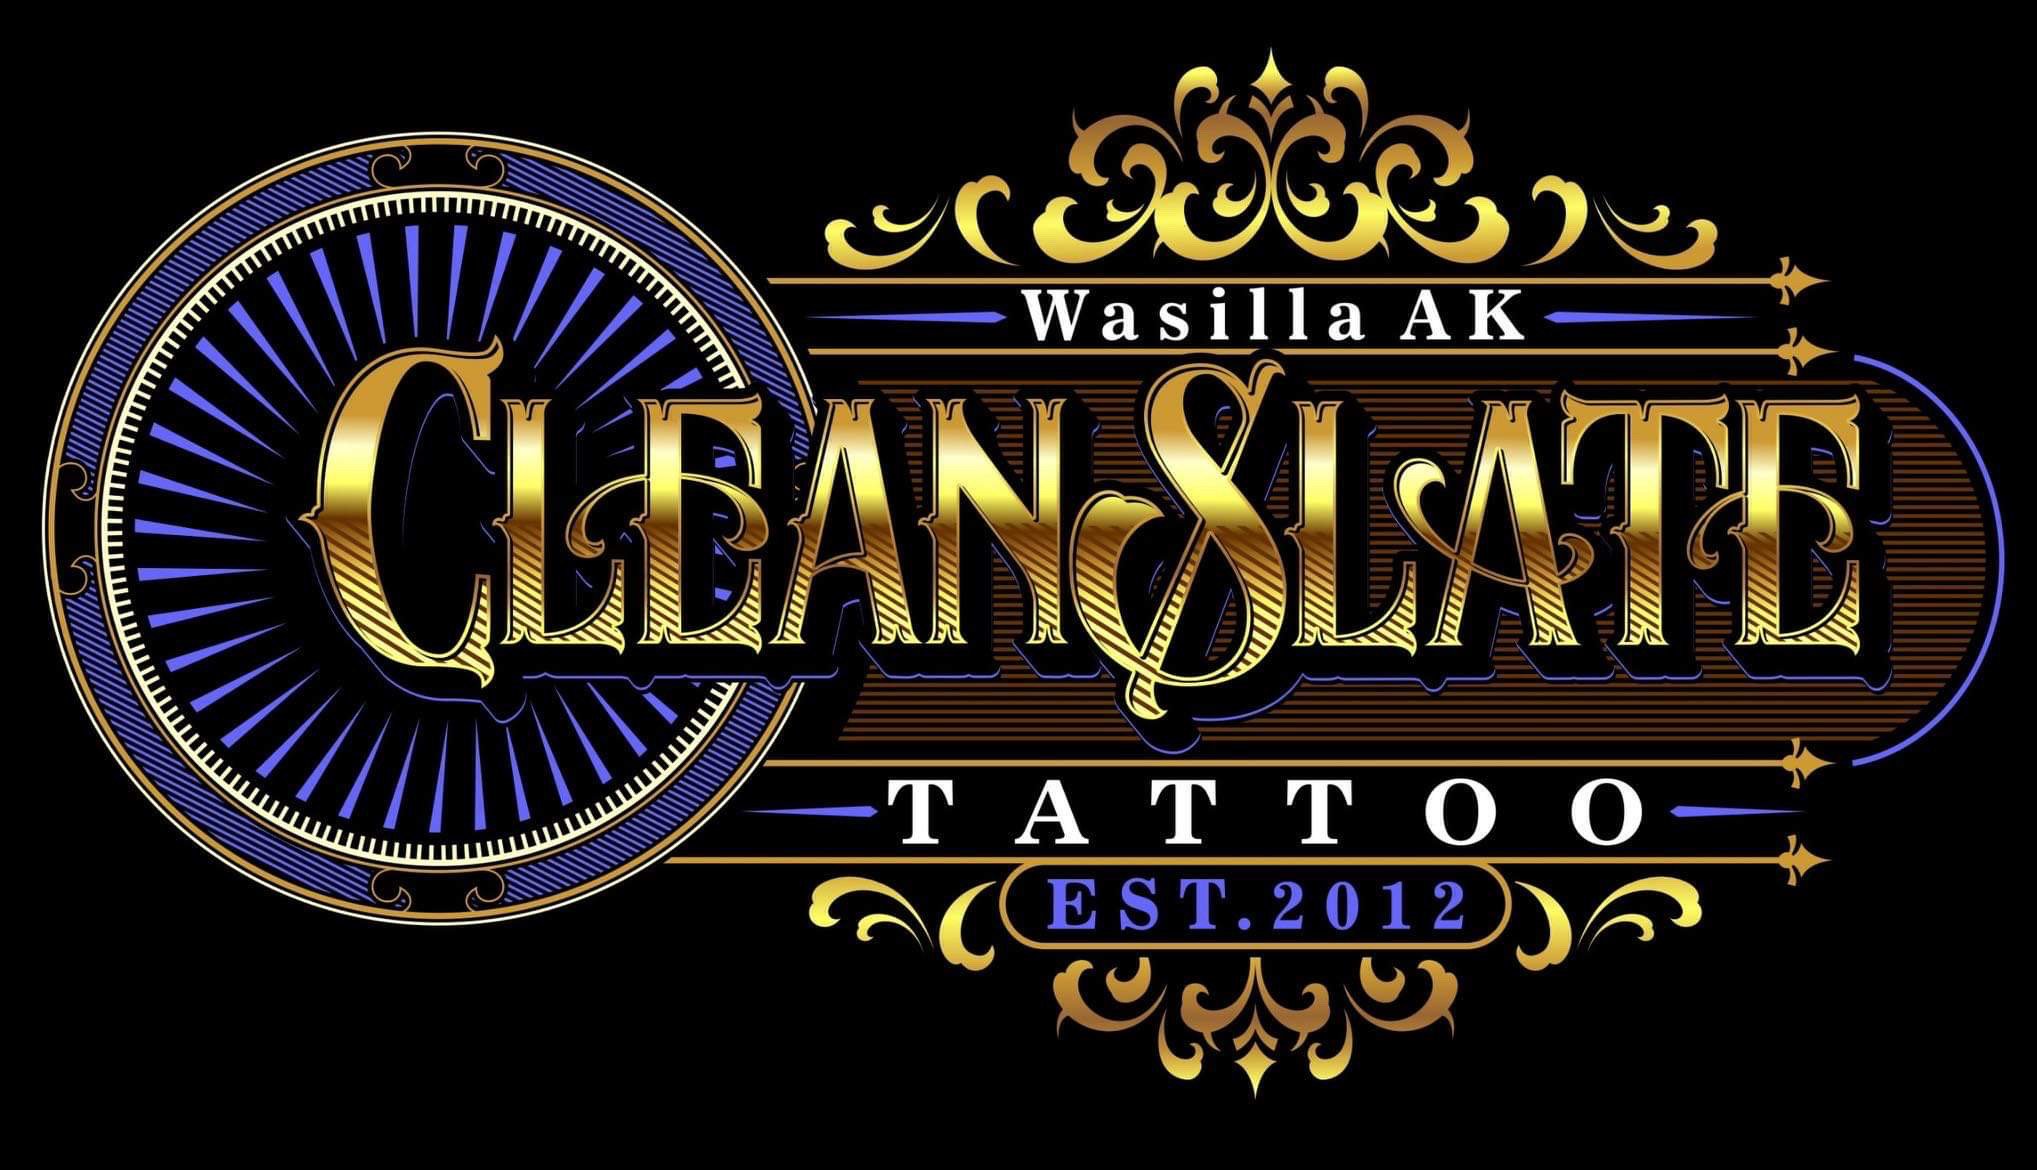 Clean Slate Tattoo.jpeg